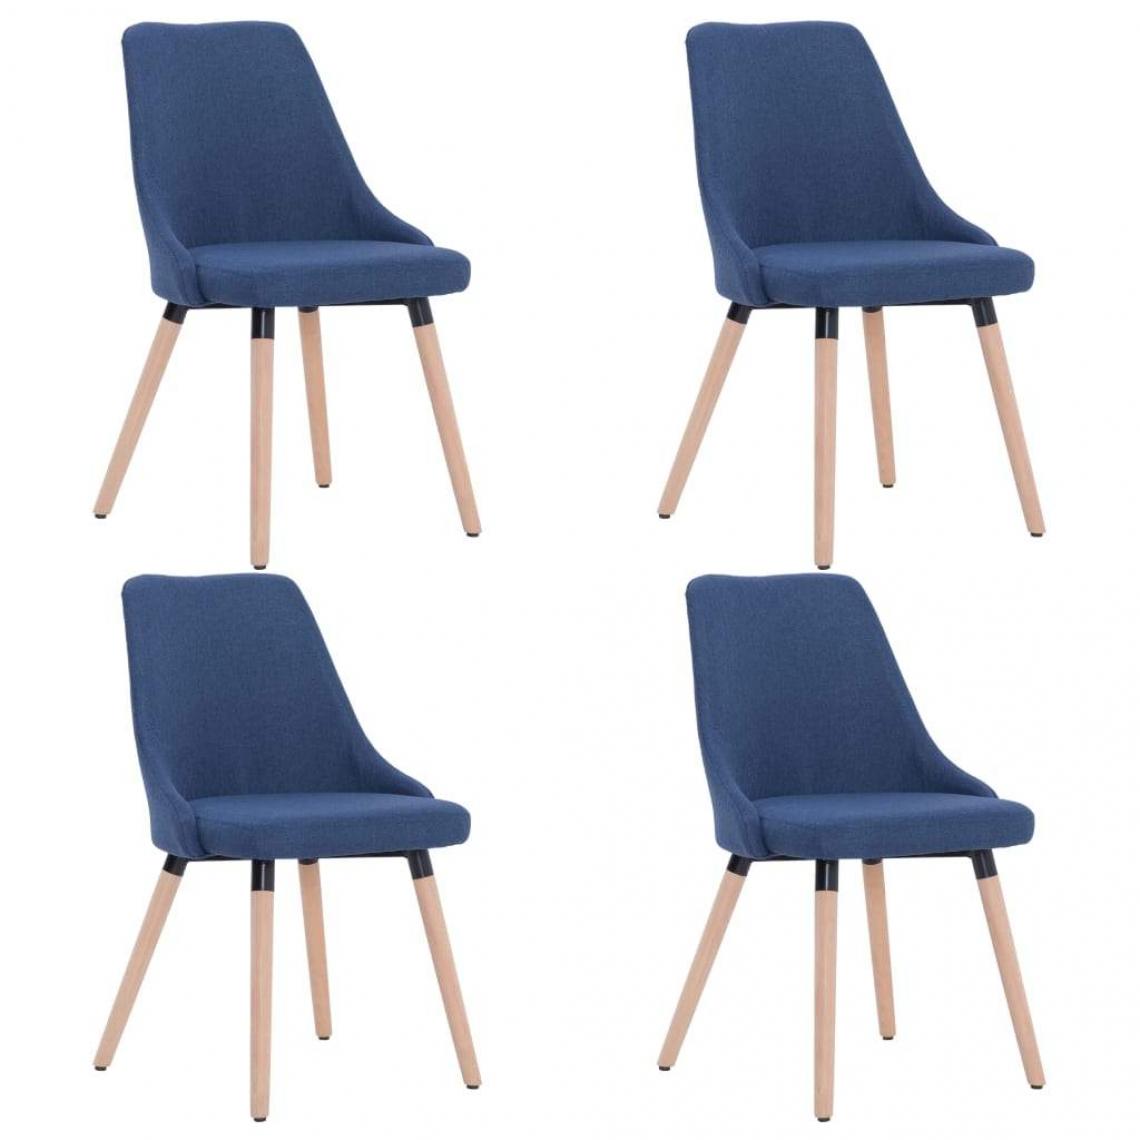 Decoshop26 - Lot de 4 chaises de salle à manger cuisine design moderne tissu bleu CDS021297 - Chaises